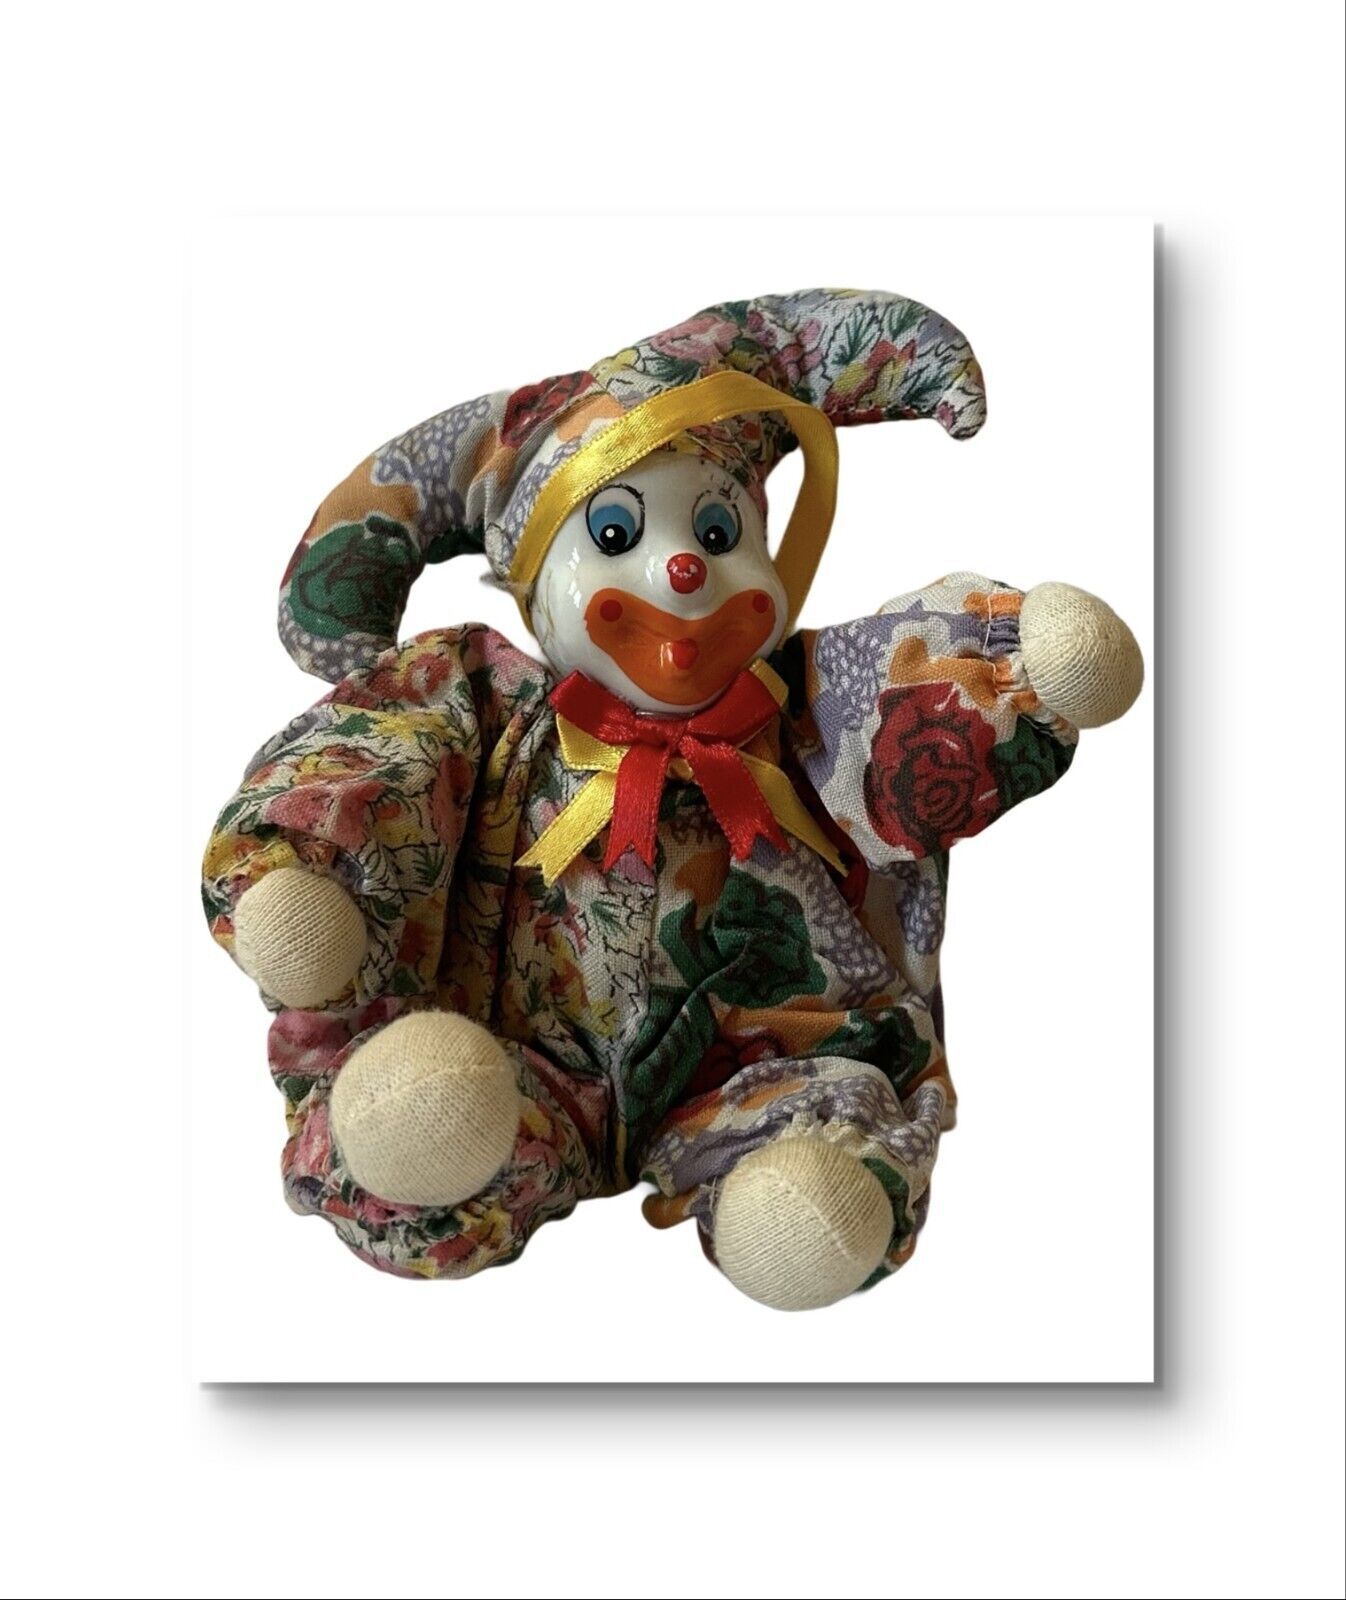 Adorable Rare Vintage Porcelain  Sand Clown Figurine